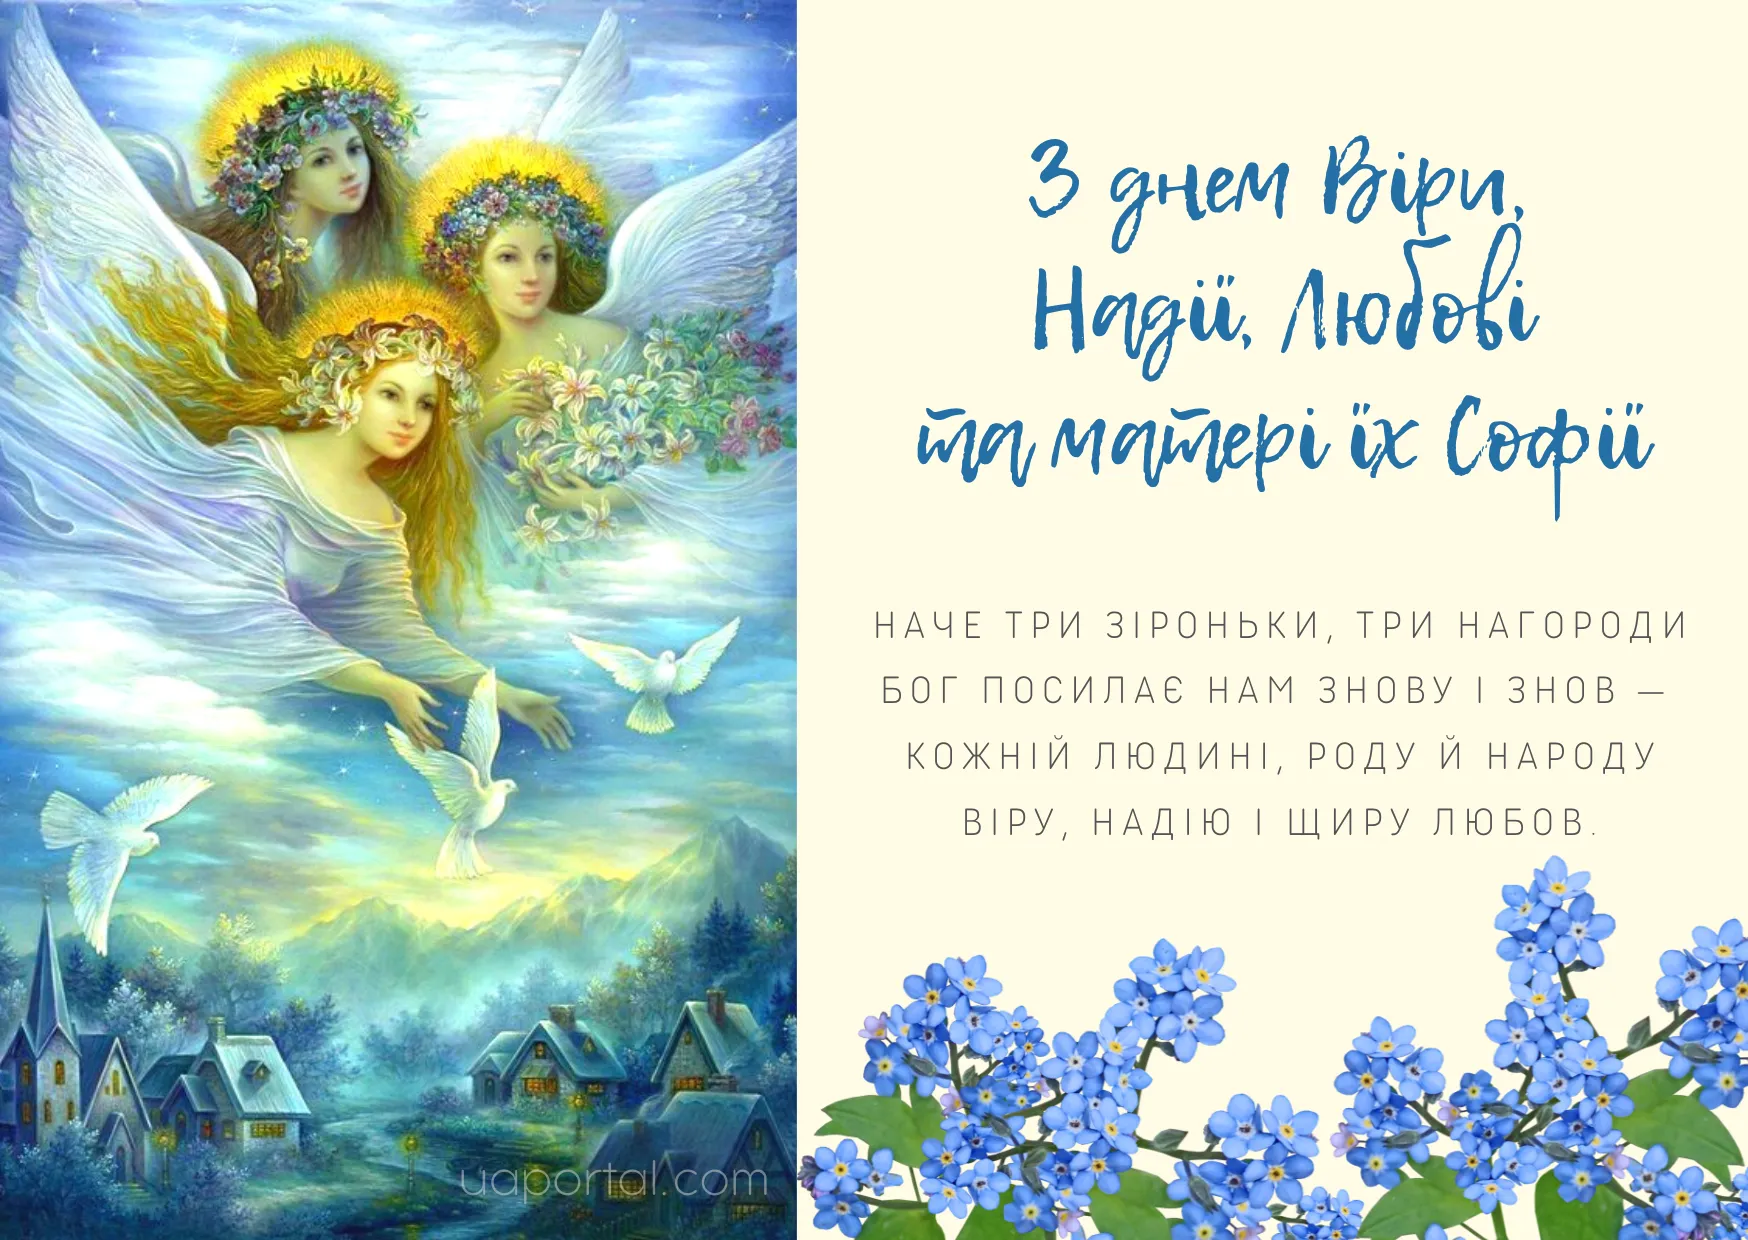 вера надежда любовь картинки с поздравлениями православные